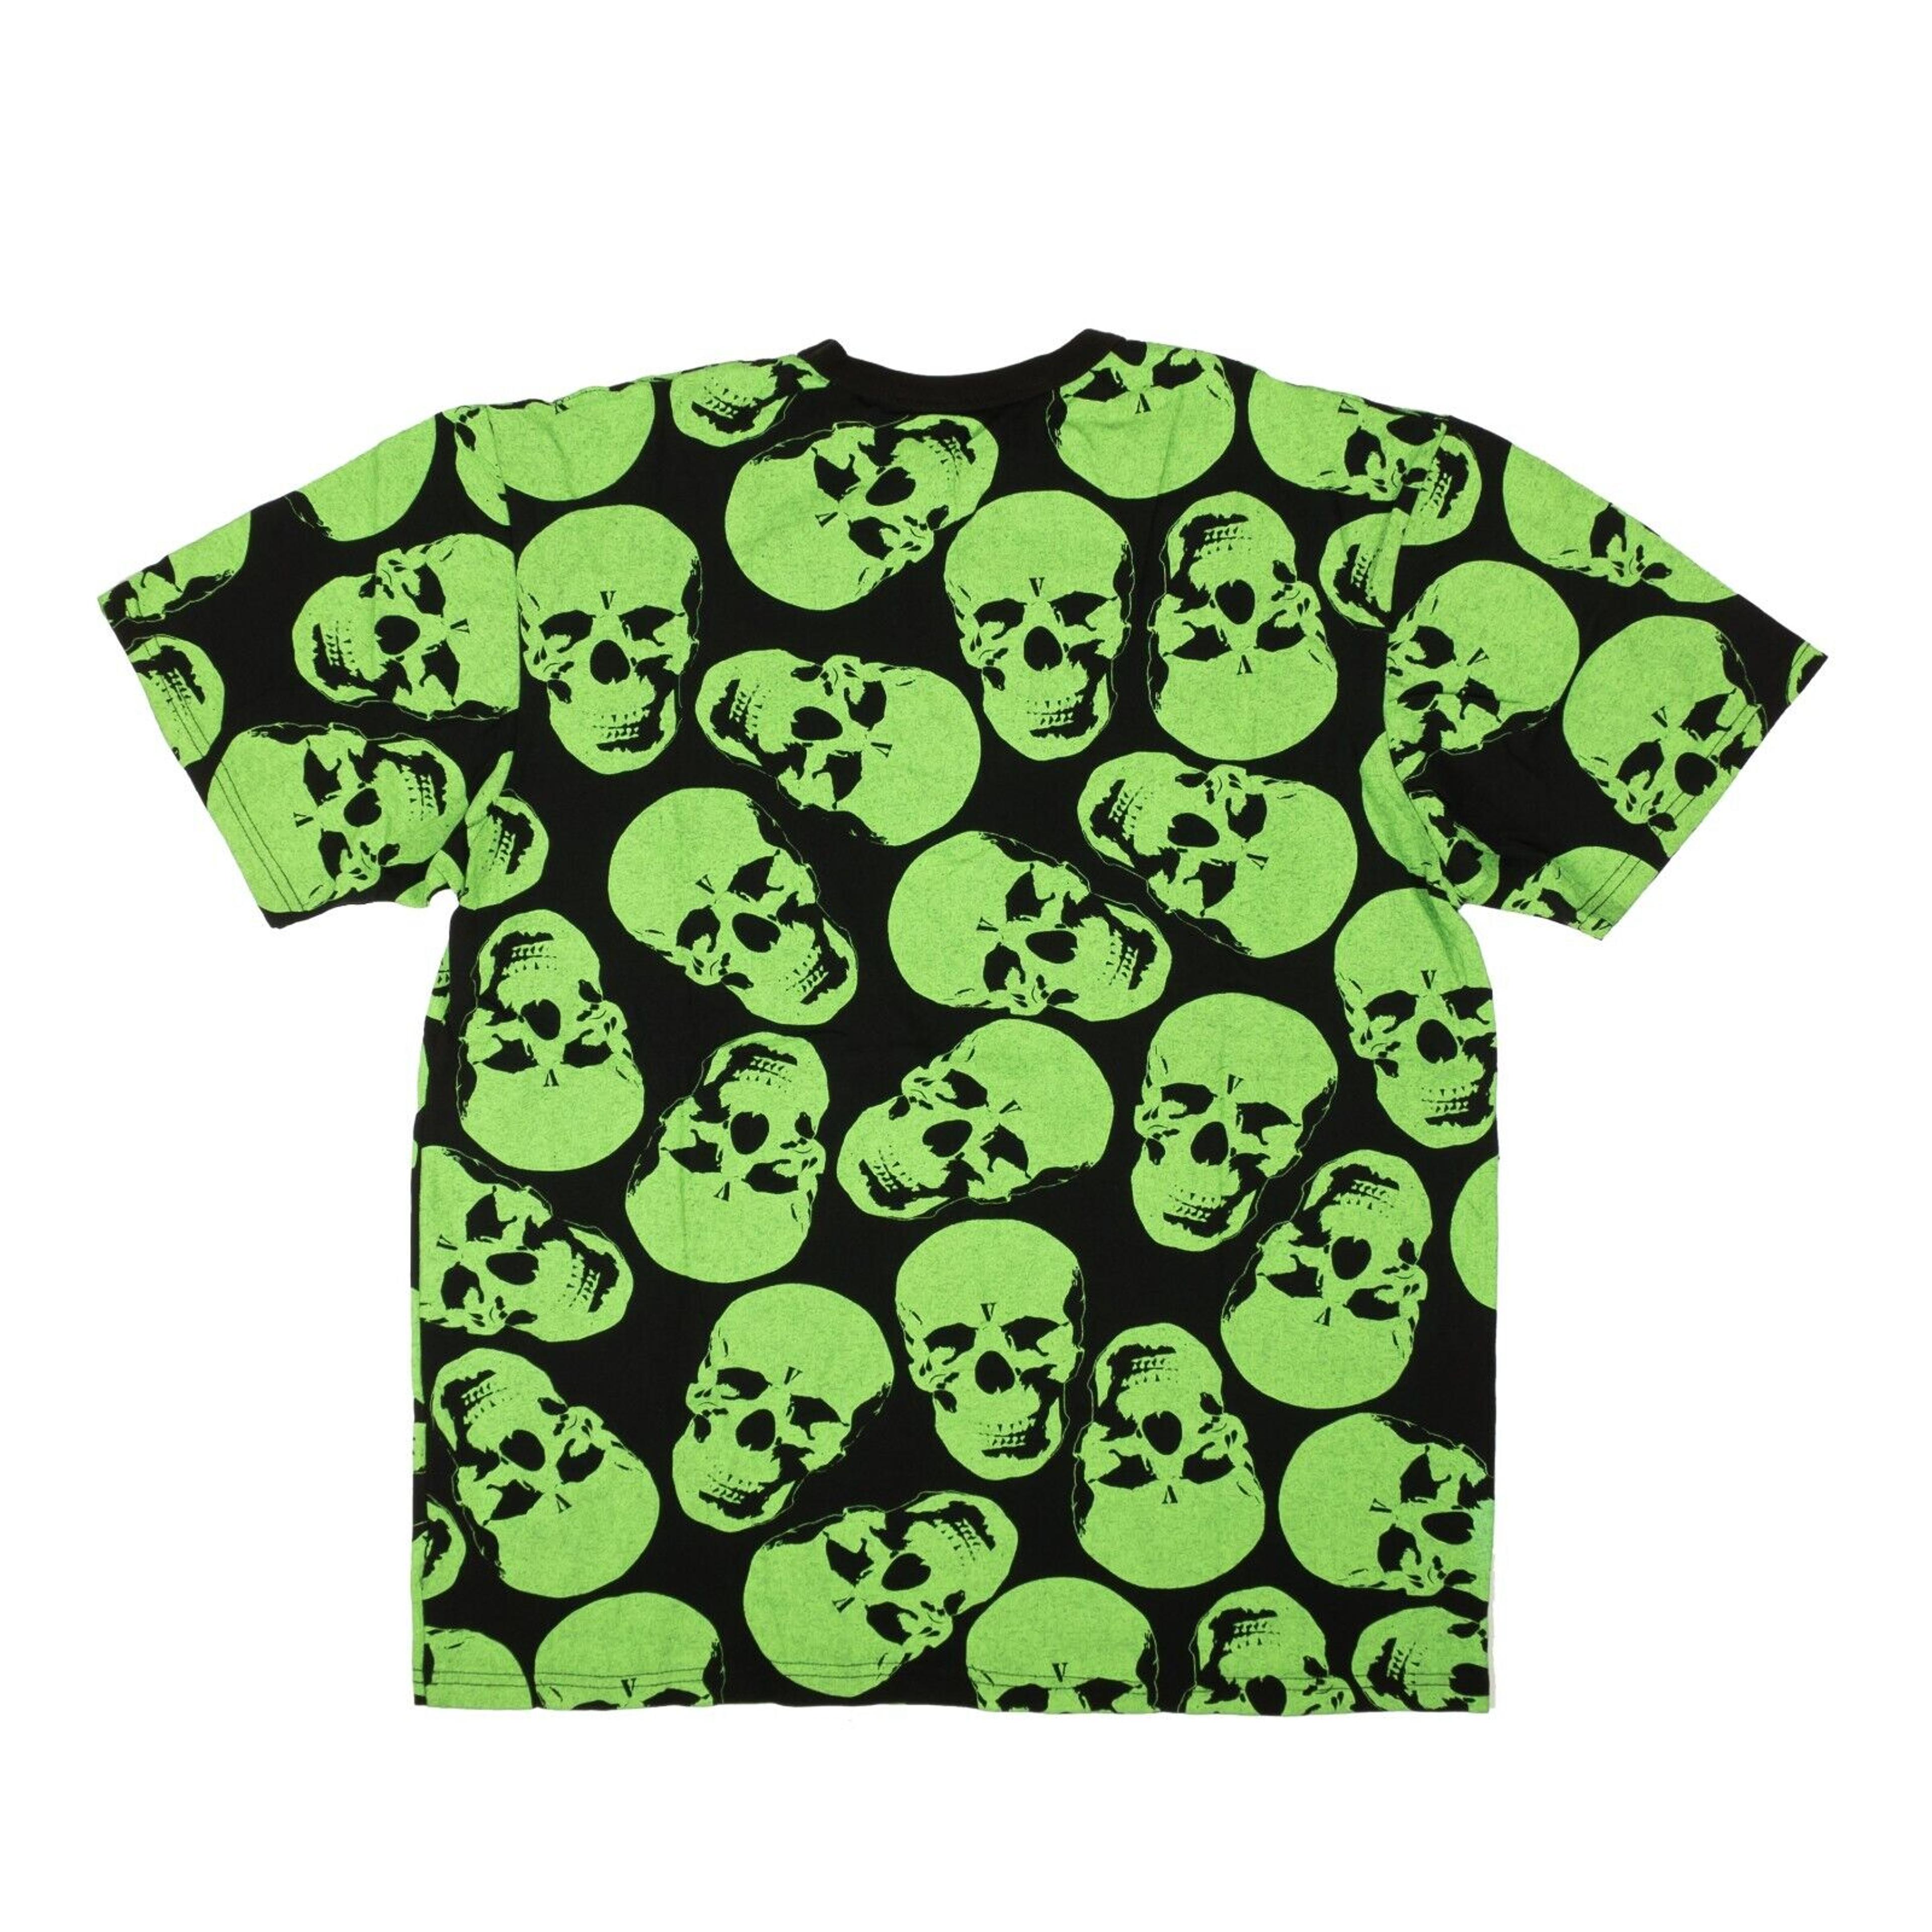 Alternate View 2 of Vlone Crypt Skull T-Shirt - Green/Black